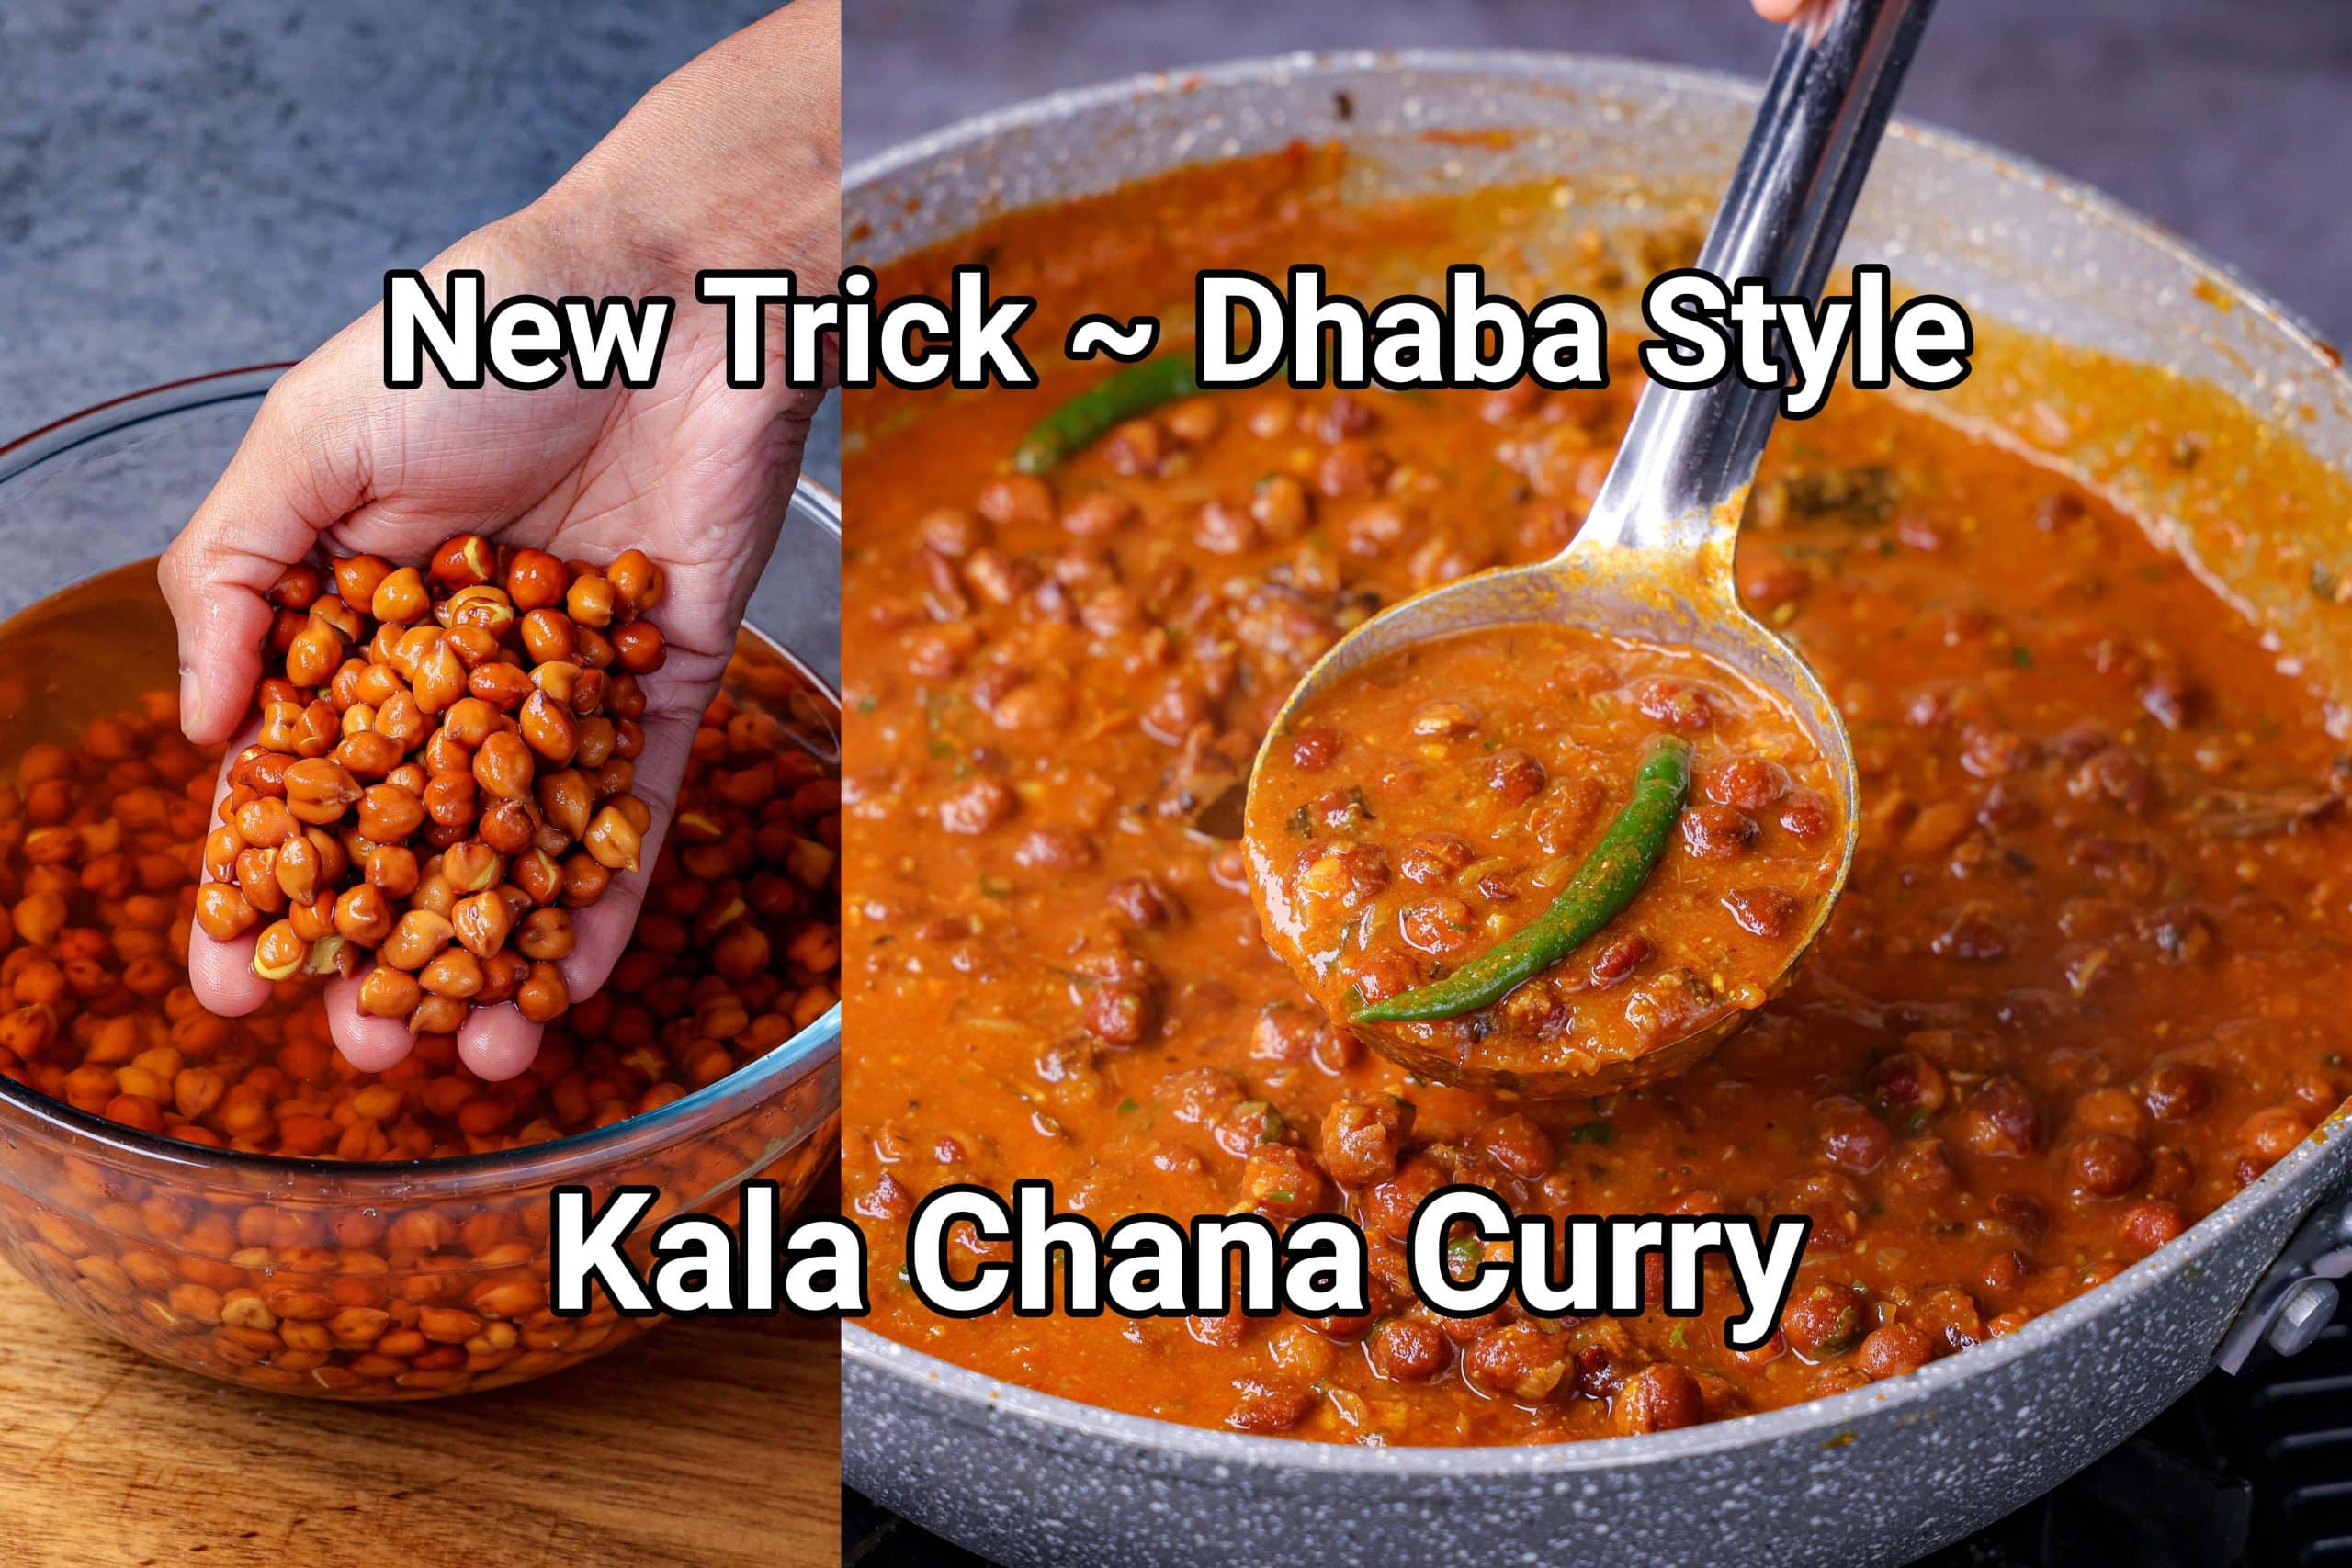 Kala Chana Recipe | Black Chickpea Curry | Kala Channa Masala Curry